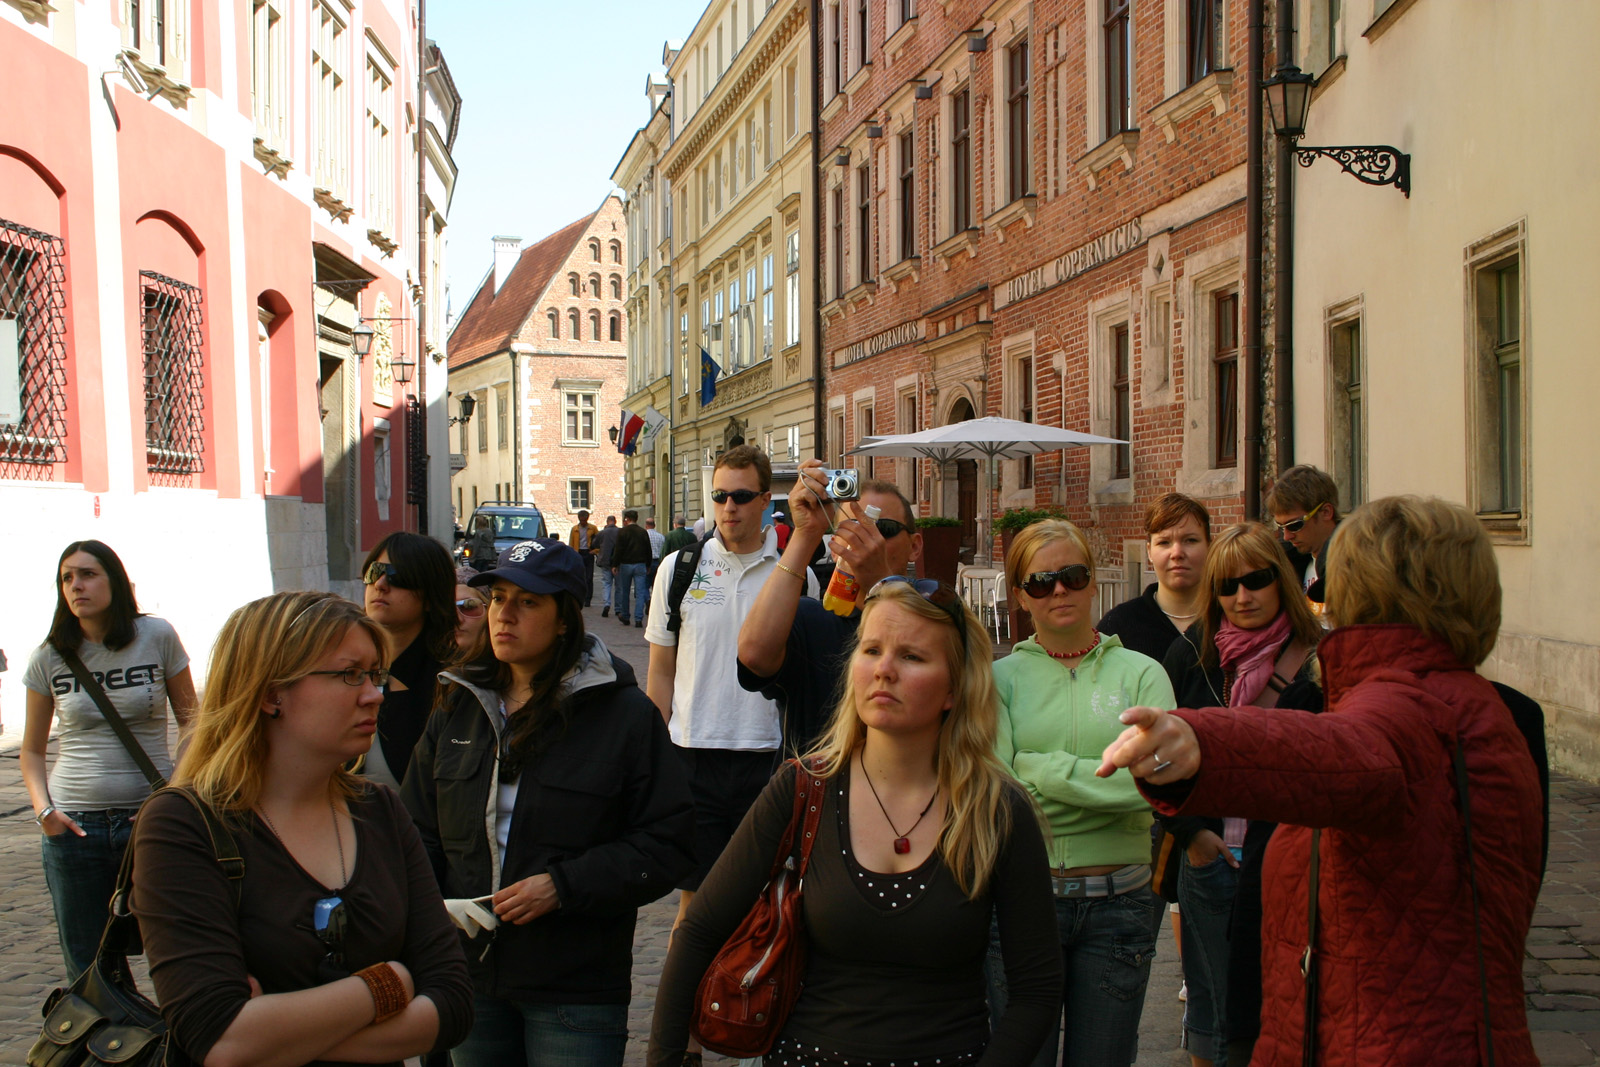 City guide guiding us through Krakow